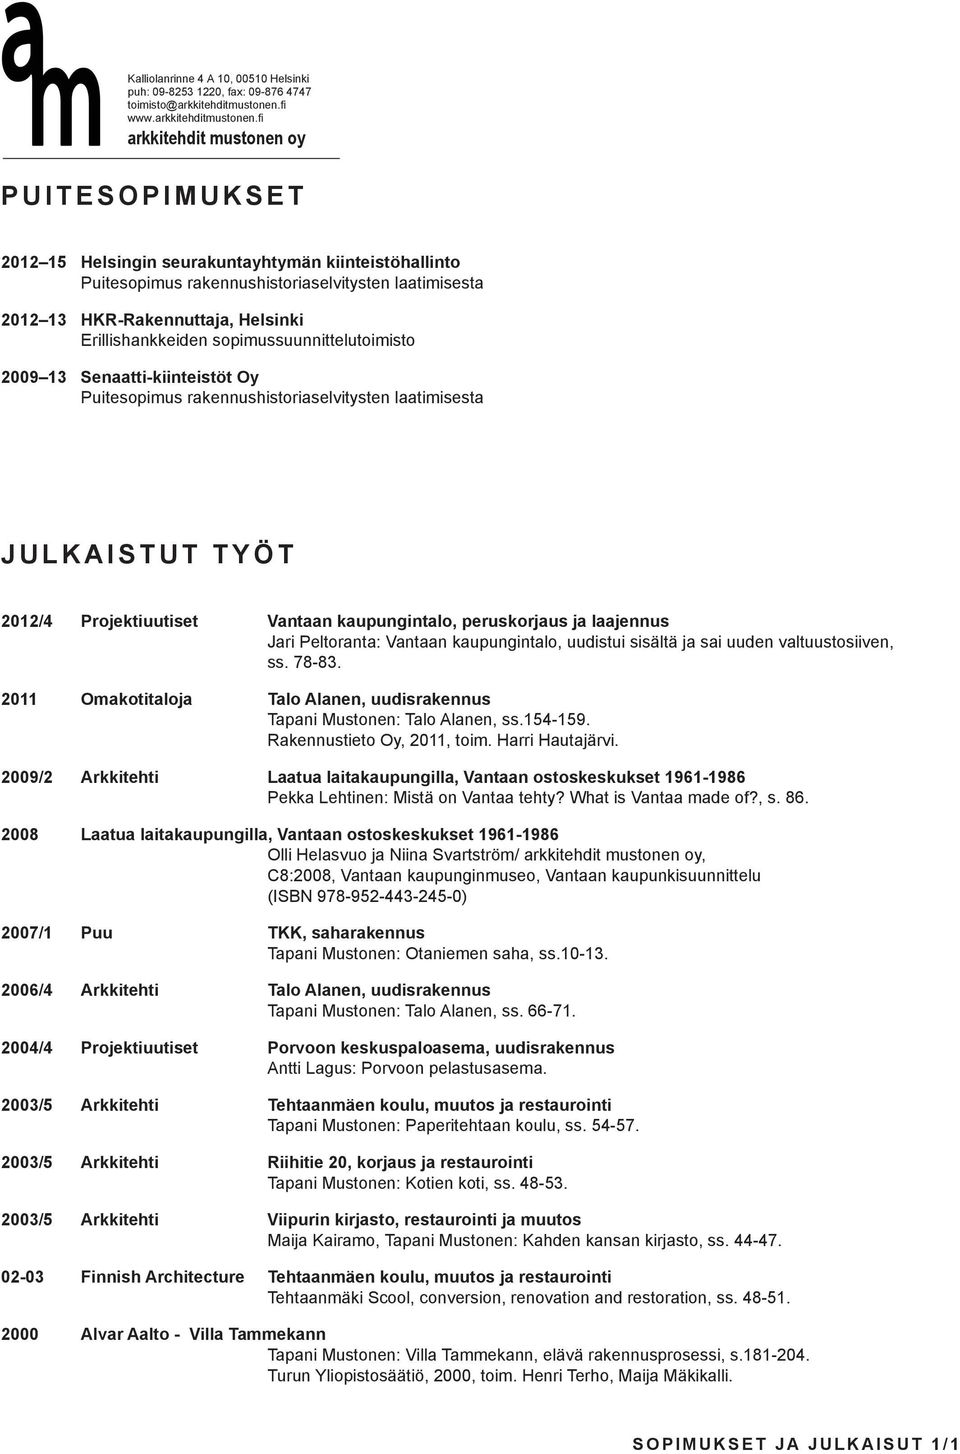 laajennus Jari Peltoranta: Vantaan kaupungintalo, uudistui sisältä ja sai uuden valtuustosiiven, ss. 78-83. 2011 Omakotitaloja Talo Alanen, uudisrakennus Tapani Mustonen: Talo Alanen, ss.154-159.